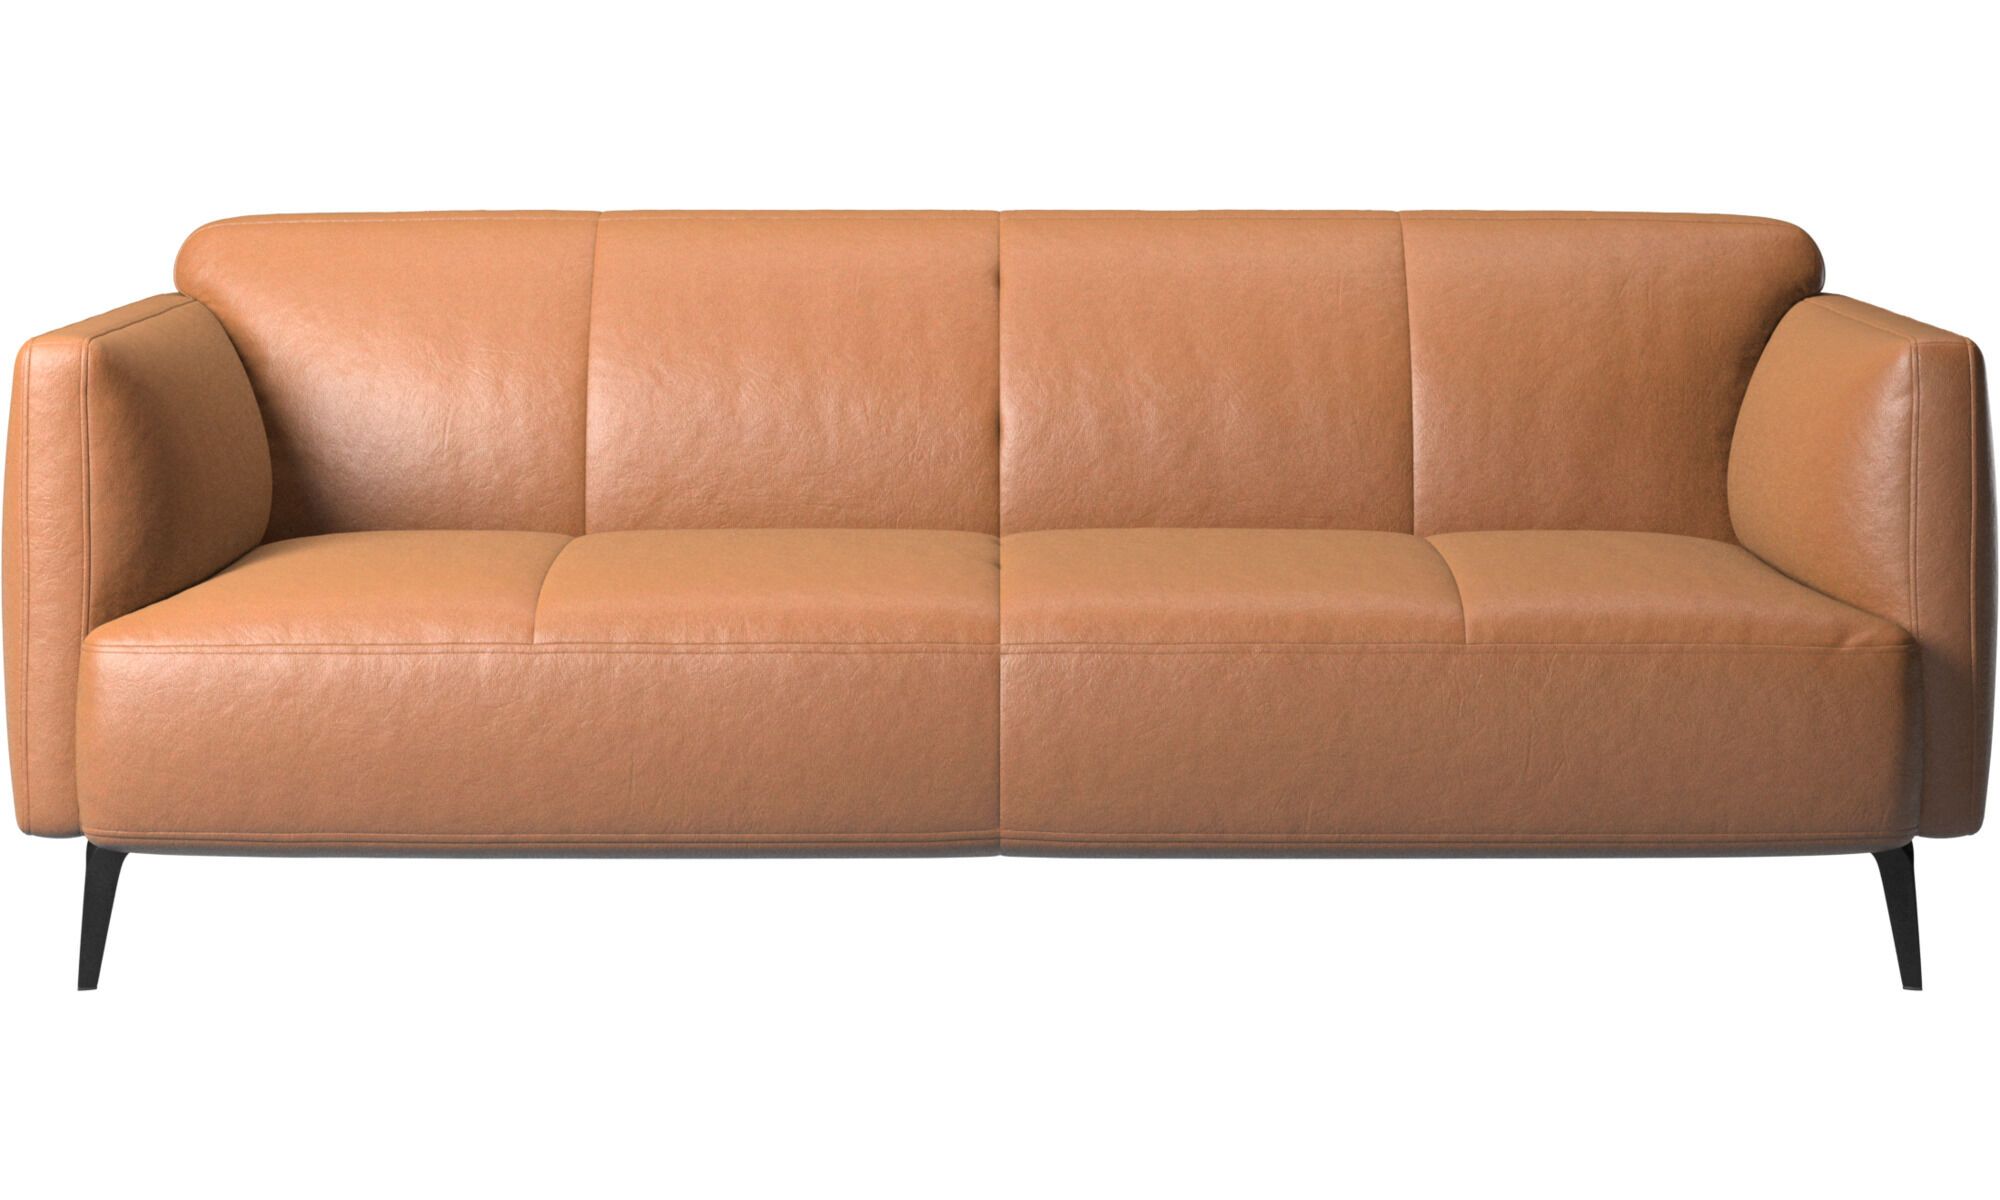 2,5 местный диван Modena с подлокотниками - Sienna 5111 Бежевая кожа -Купить в галерее интерьеров Твинстор